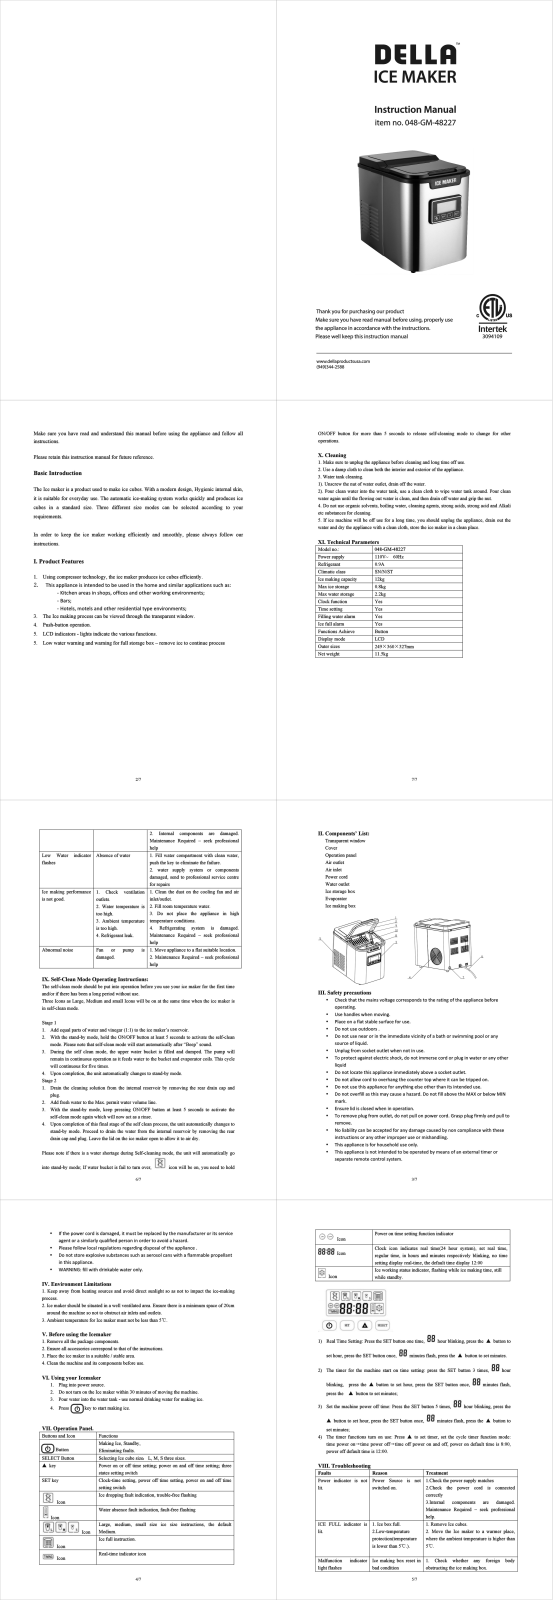 Della 048-GM-48227 User Manual